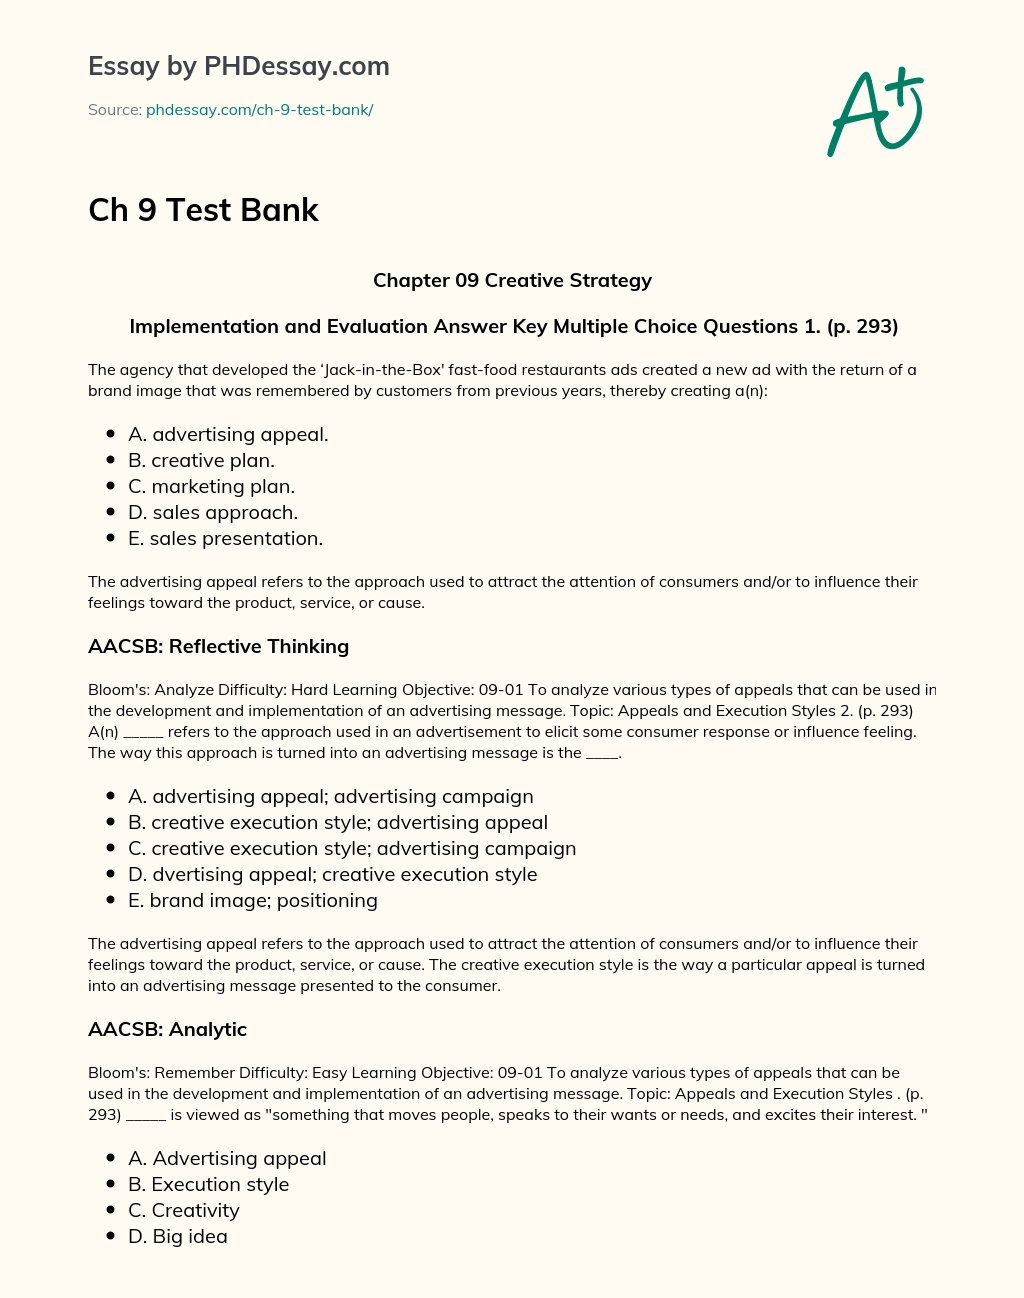 Ch 9 Test Bank essay